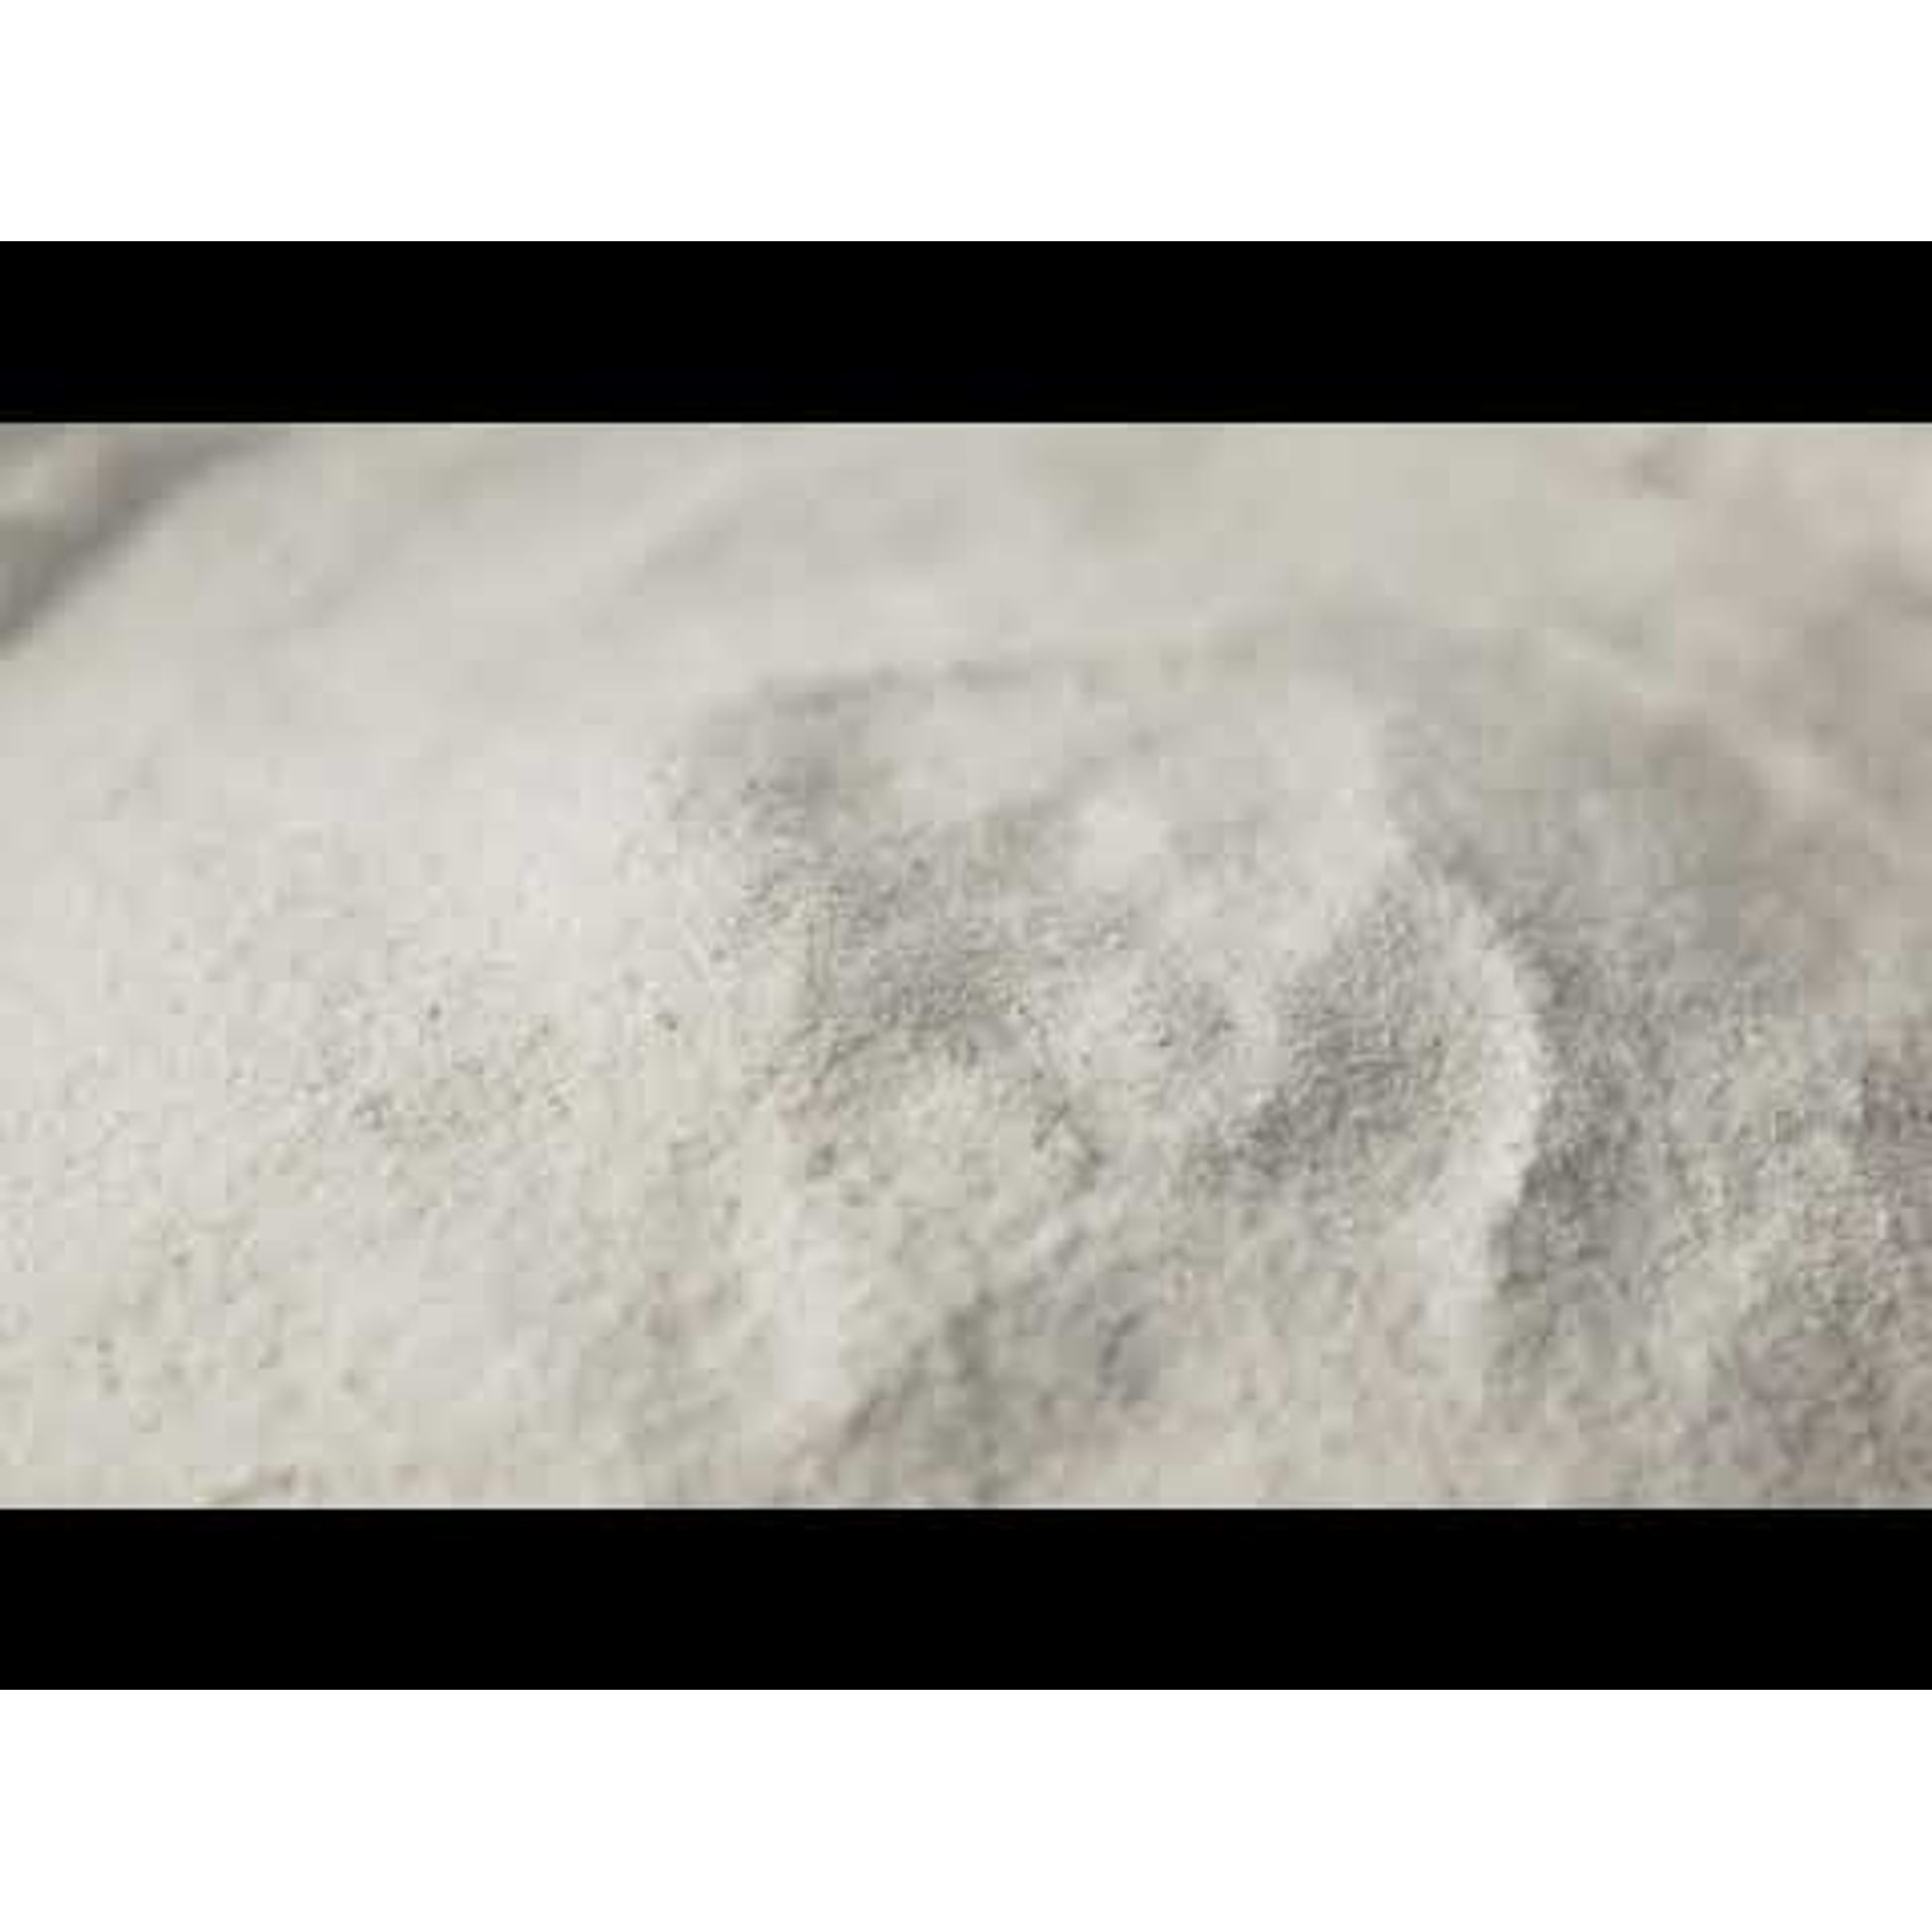 Buckwheat Flour (Gluten-free)